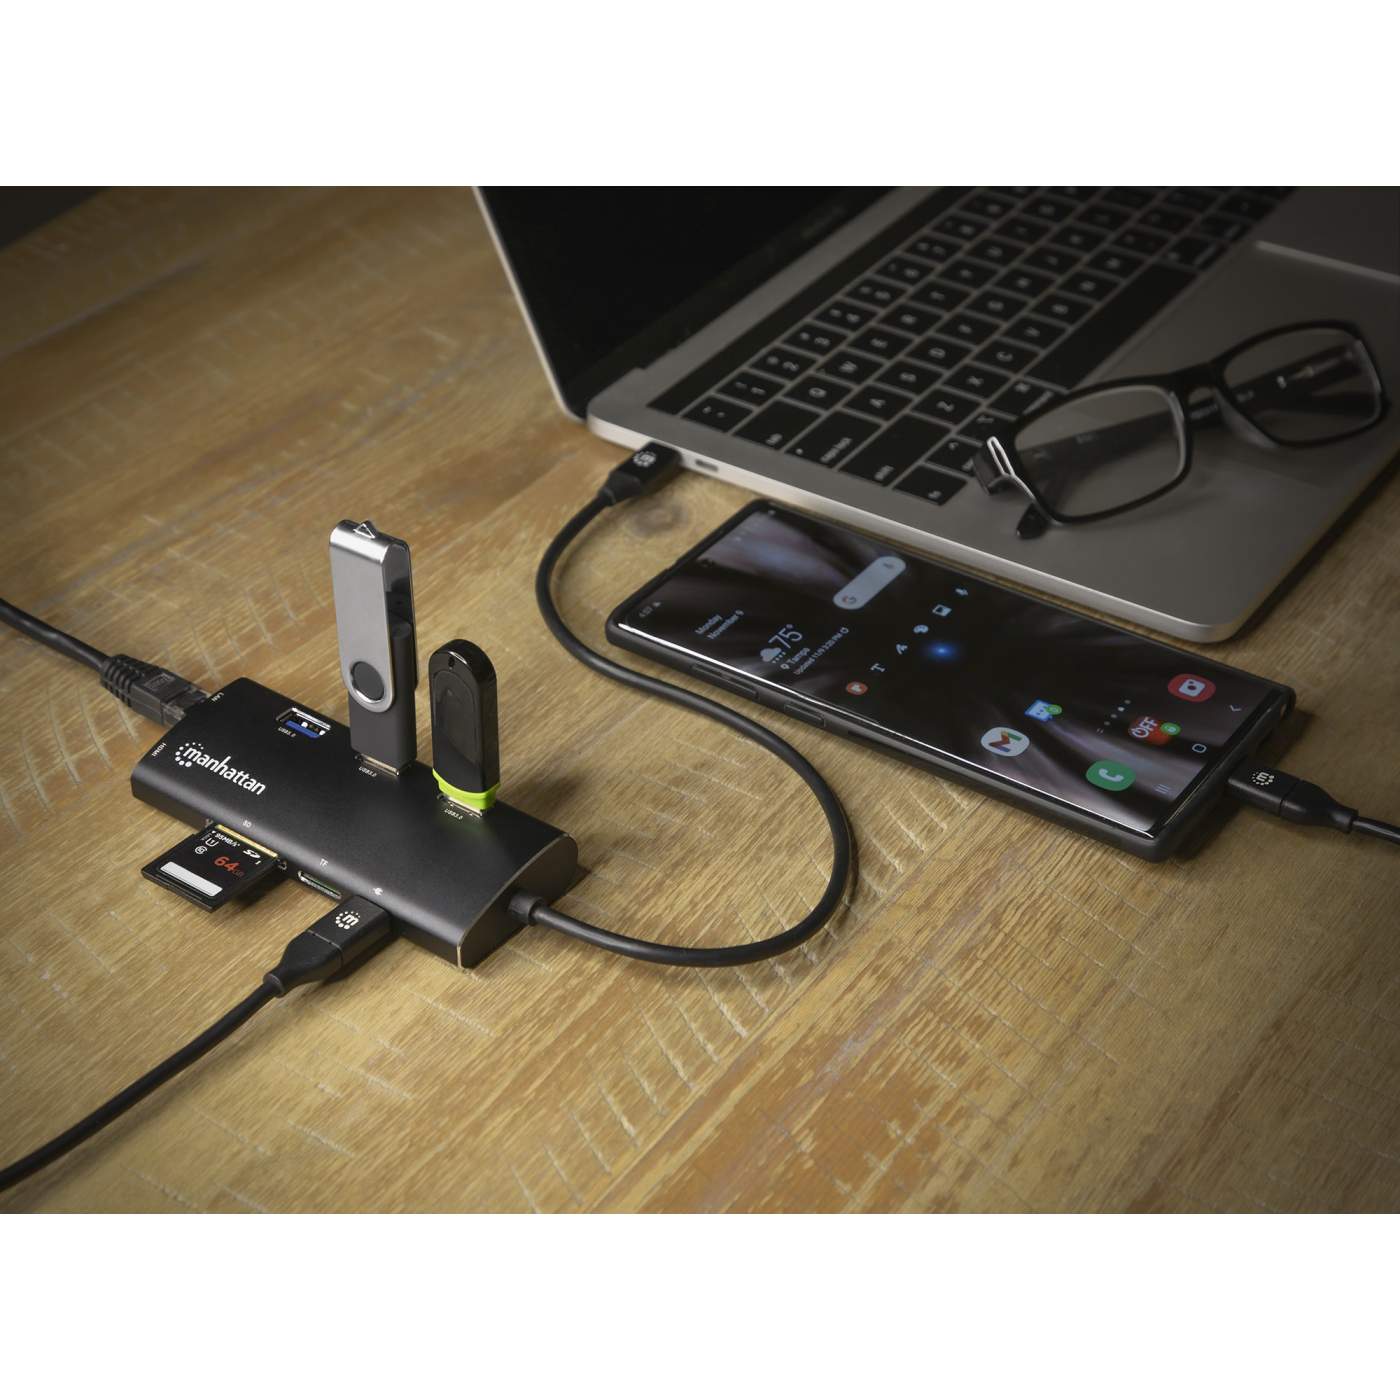 Manhattan Hub USB-C 3.1 Type-C SuperSpeed Génération 1 avec alimentation  électrique (163552)